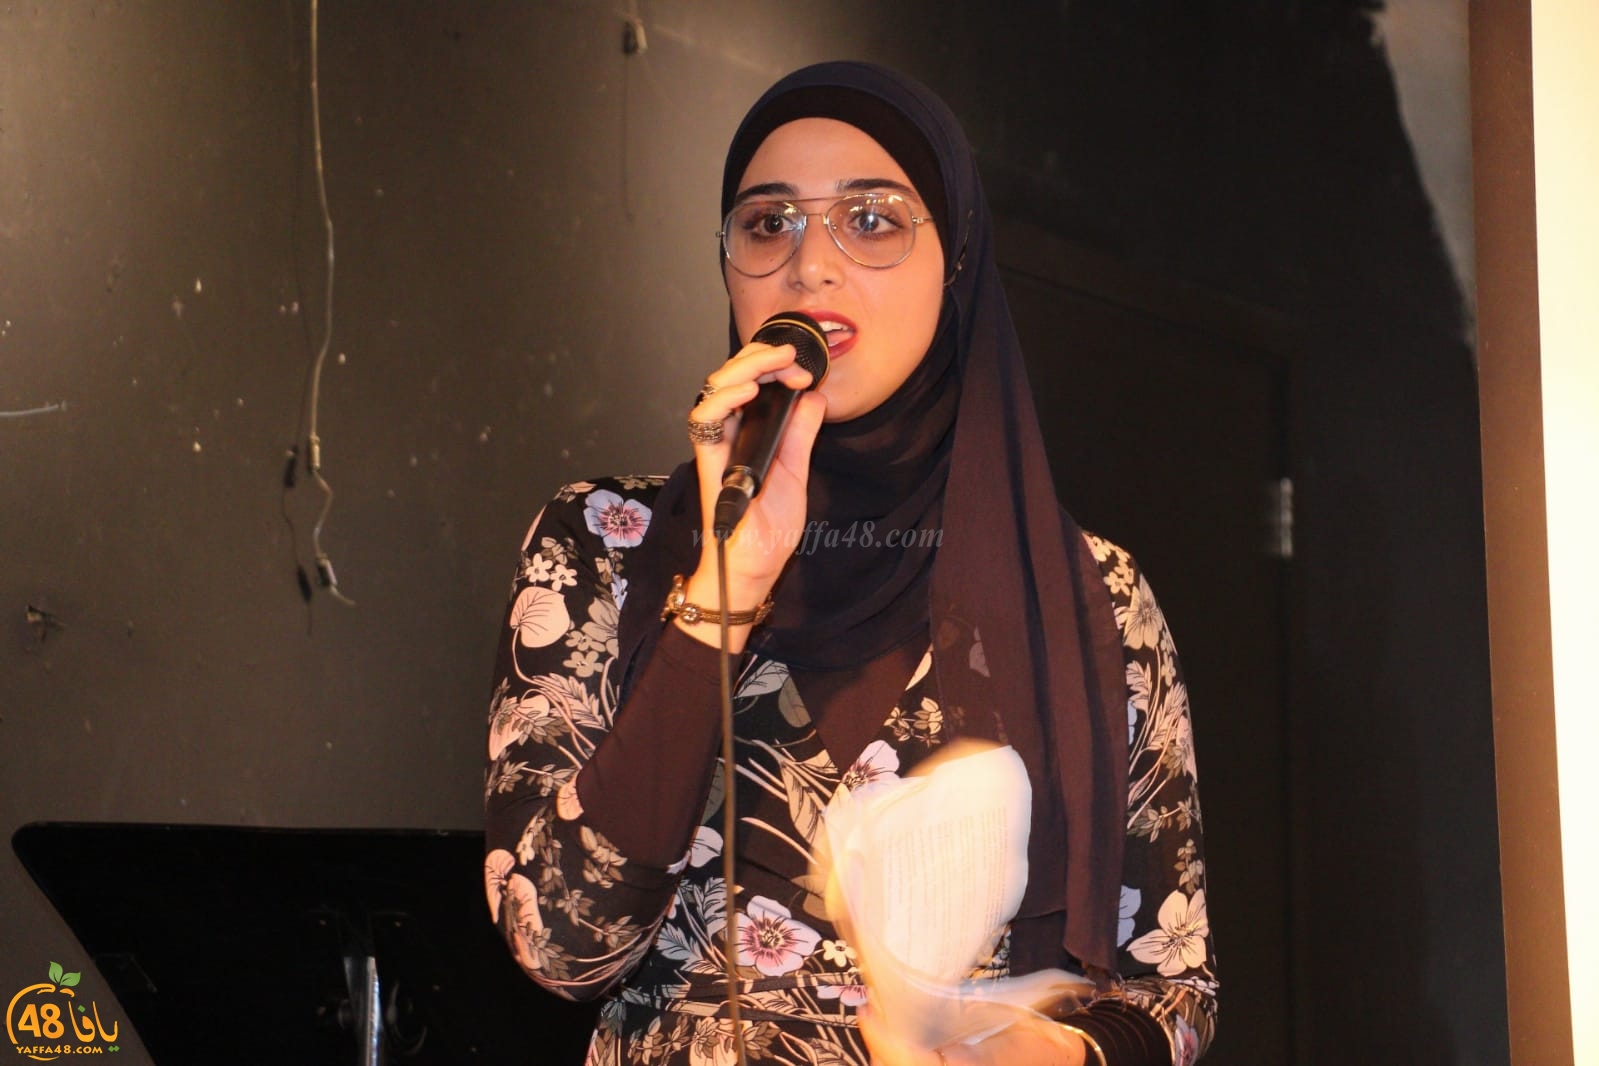 بالصور: مشاركة واسعة في مهرجان افتتاح الحملة الانتخابية لقائمة يافا في مسرح السرايا